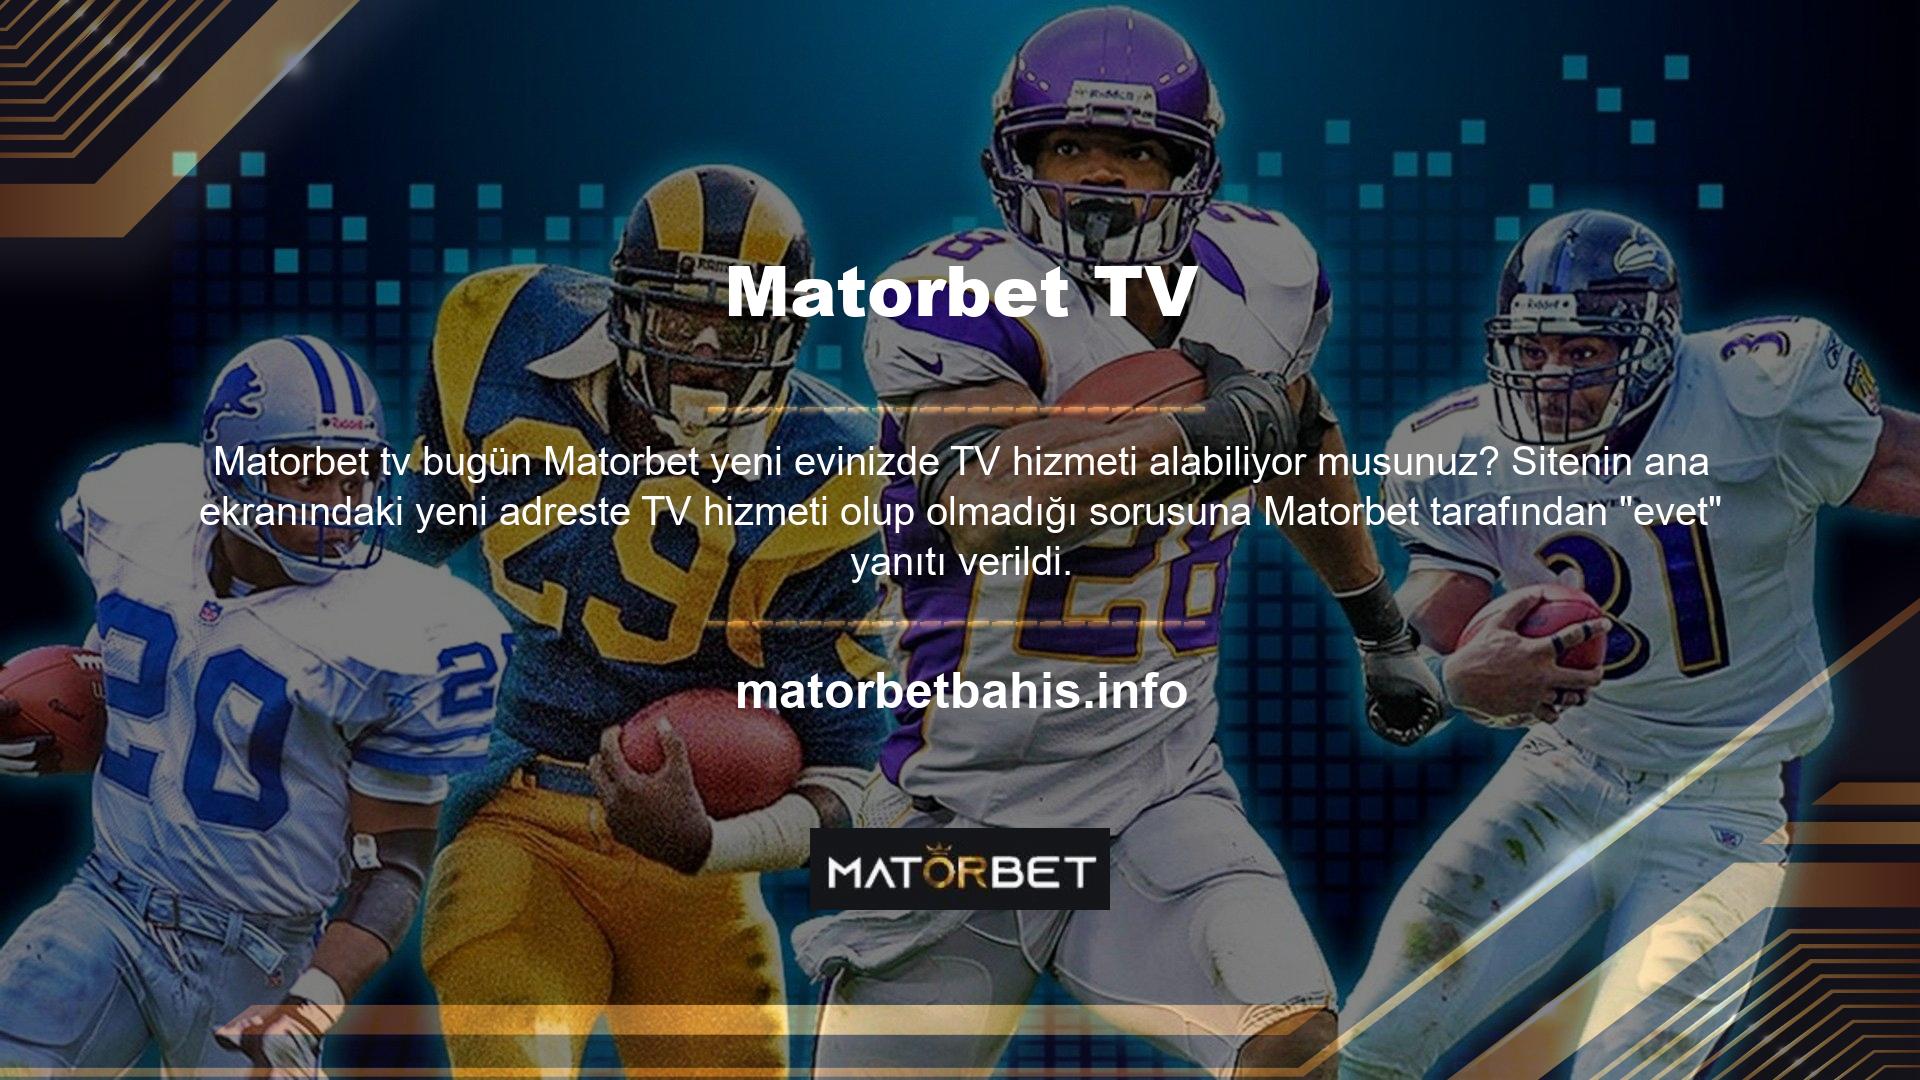 Matorbet TV sekmesini yeni giriş adresi olarak kullanan oyuncular artık TV hizmetine erişebiliyor